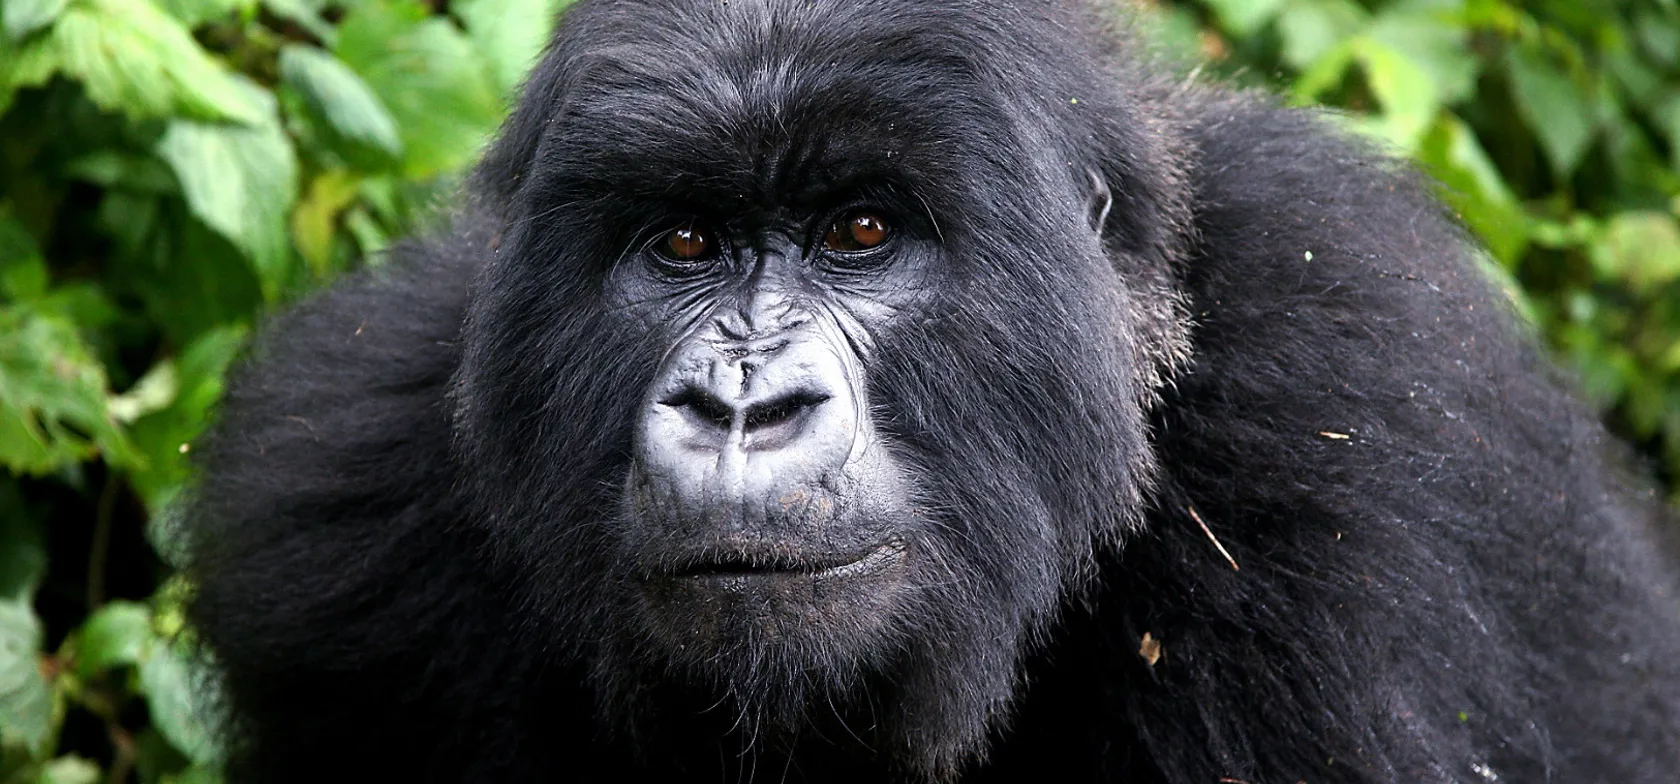 Gorillaerne lever i bjergene i det centrale Afrika. Foto Viktors Farmor